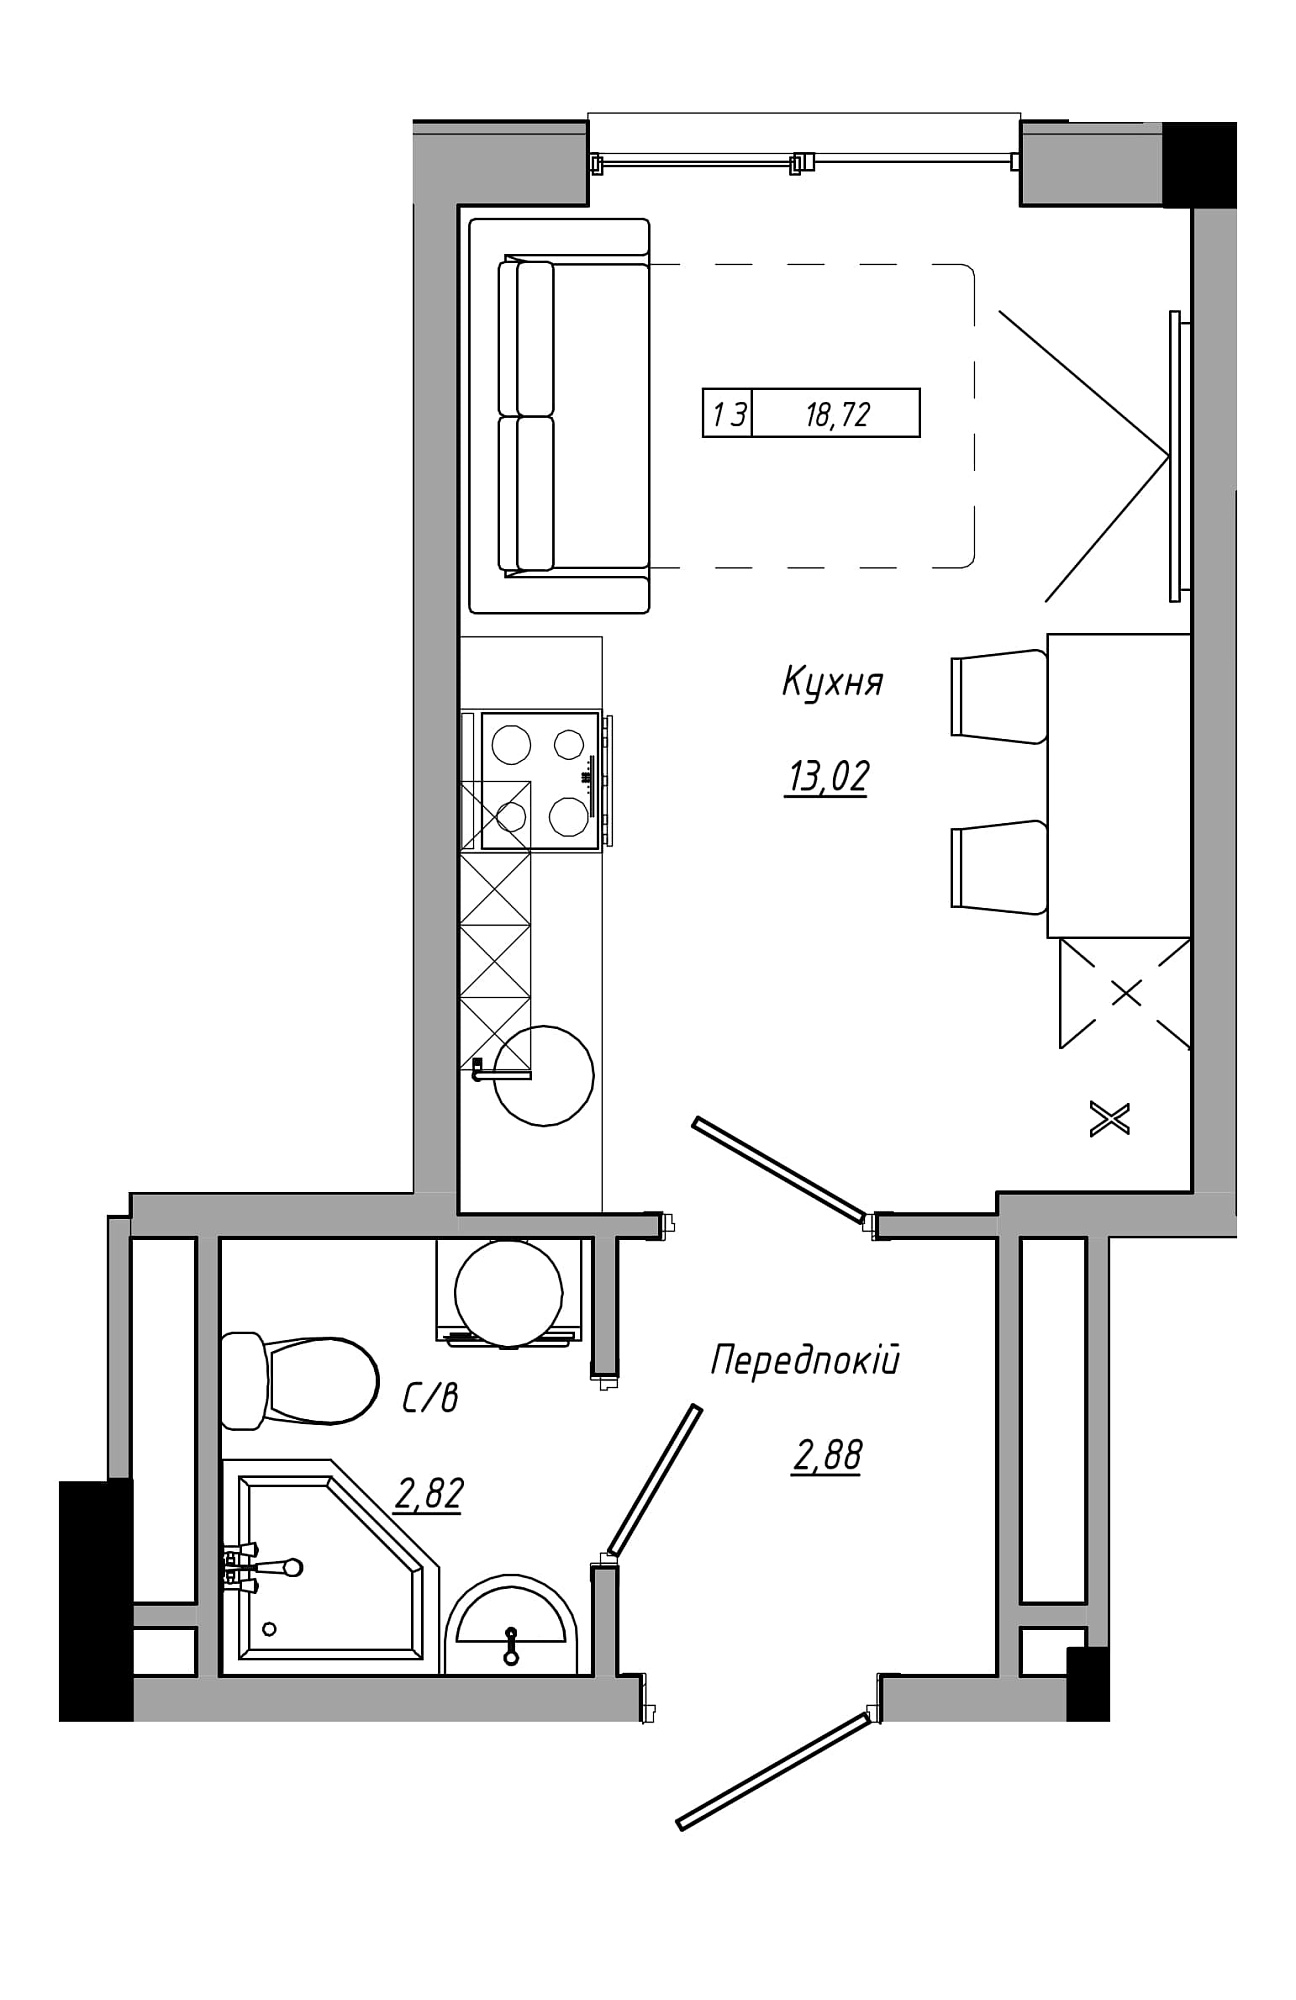 Планування Smart-квартира площею 18.72м2, AB-21-10/00011.